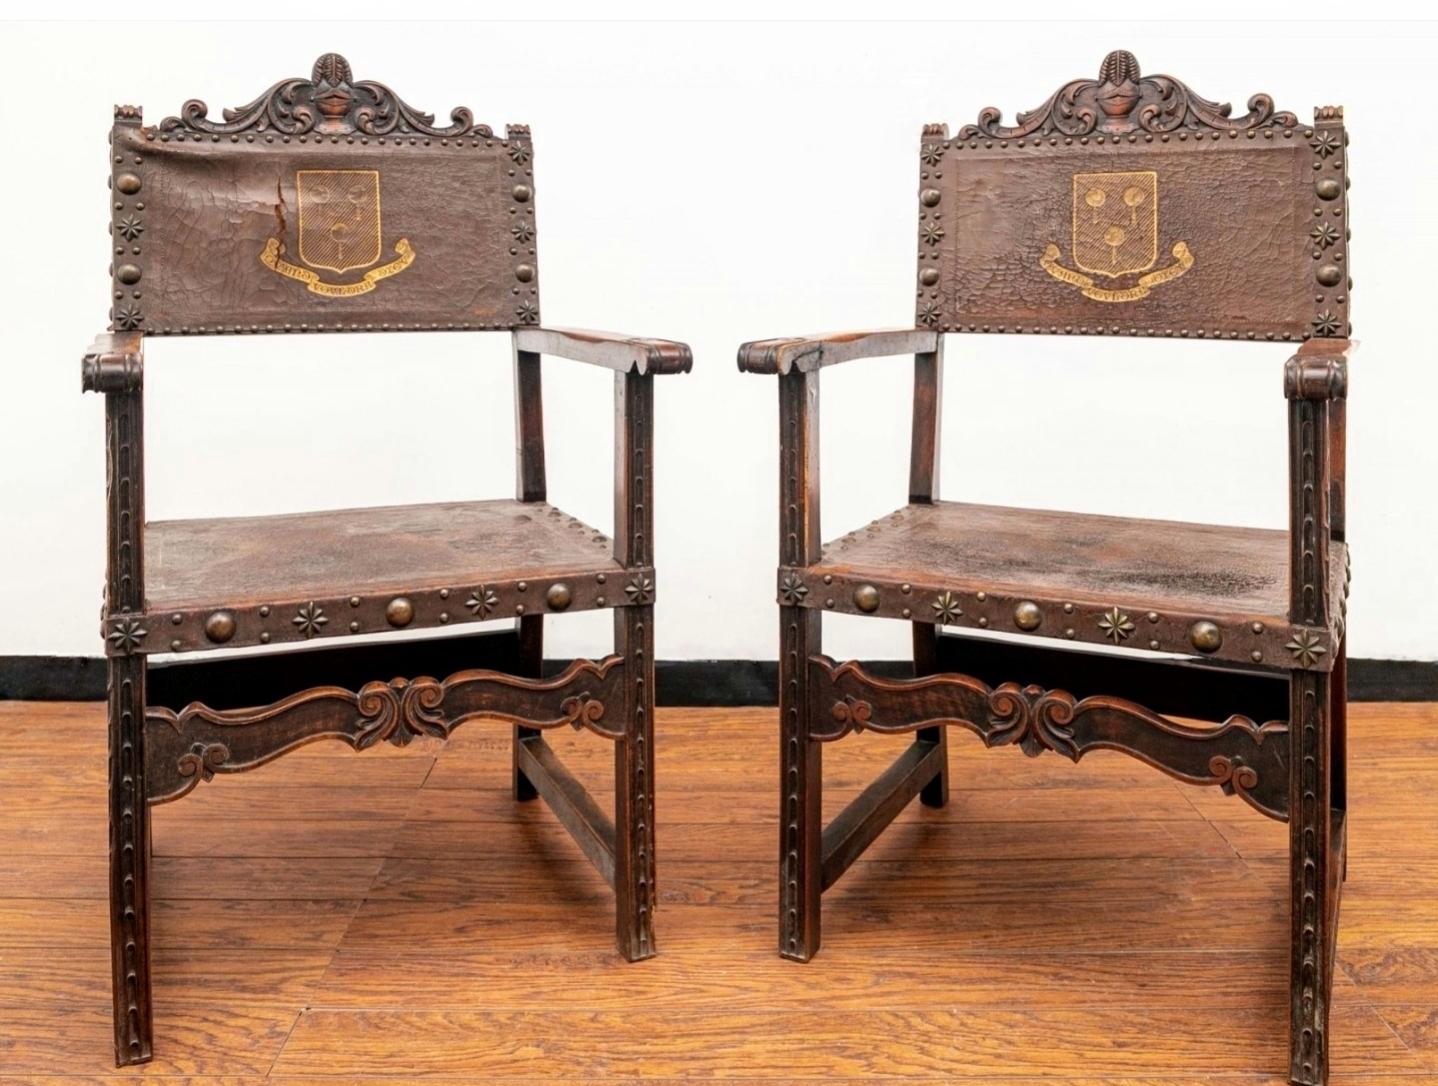 Paire de chaises d'entrée en cuir et en noyer de style Renaissance anglaise.

19e siècle, îles britanniques. Le dossier est orné d'un écusson familial doré et d'une bannière à enroulement avec inscription en latin.

Fauteuil trône médiéval européen